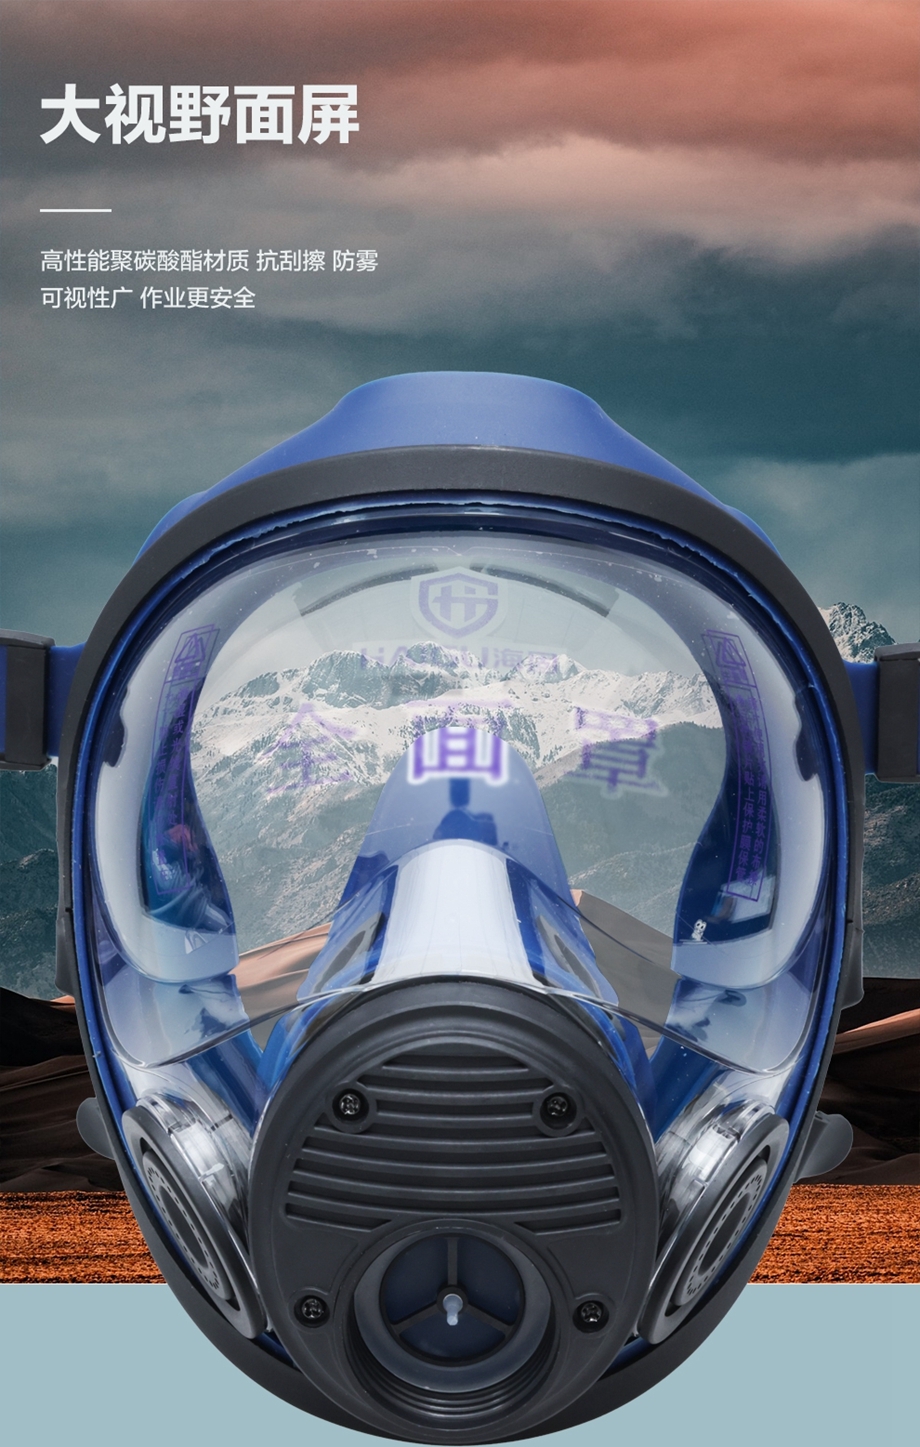 海固新品HG-800F防毒全面罩